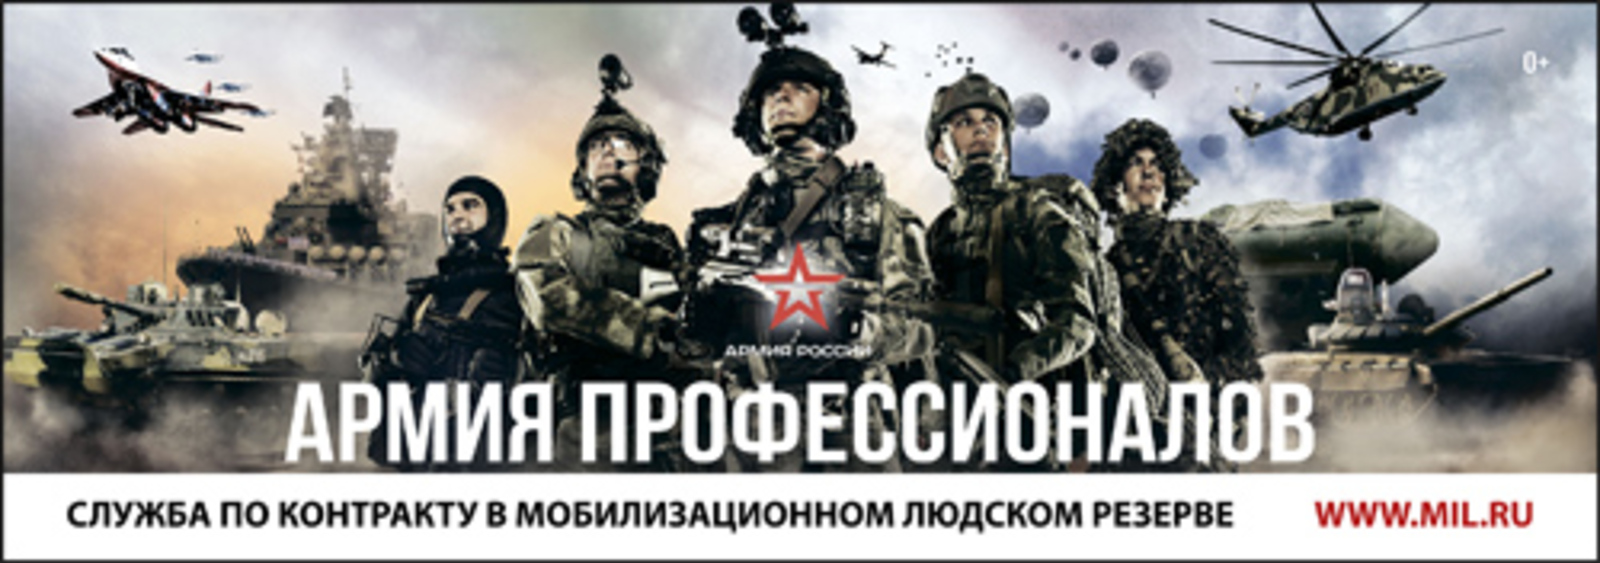 Производится набор граждан на пребывание в резерве Вооруженных Сил РФ